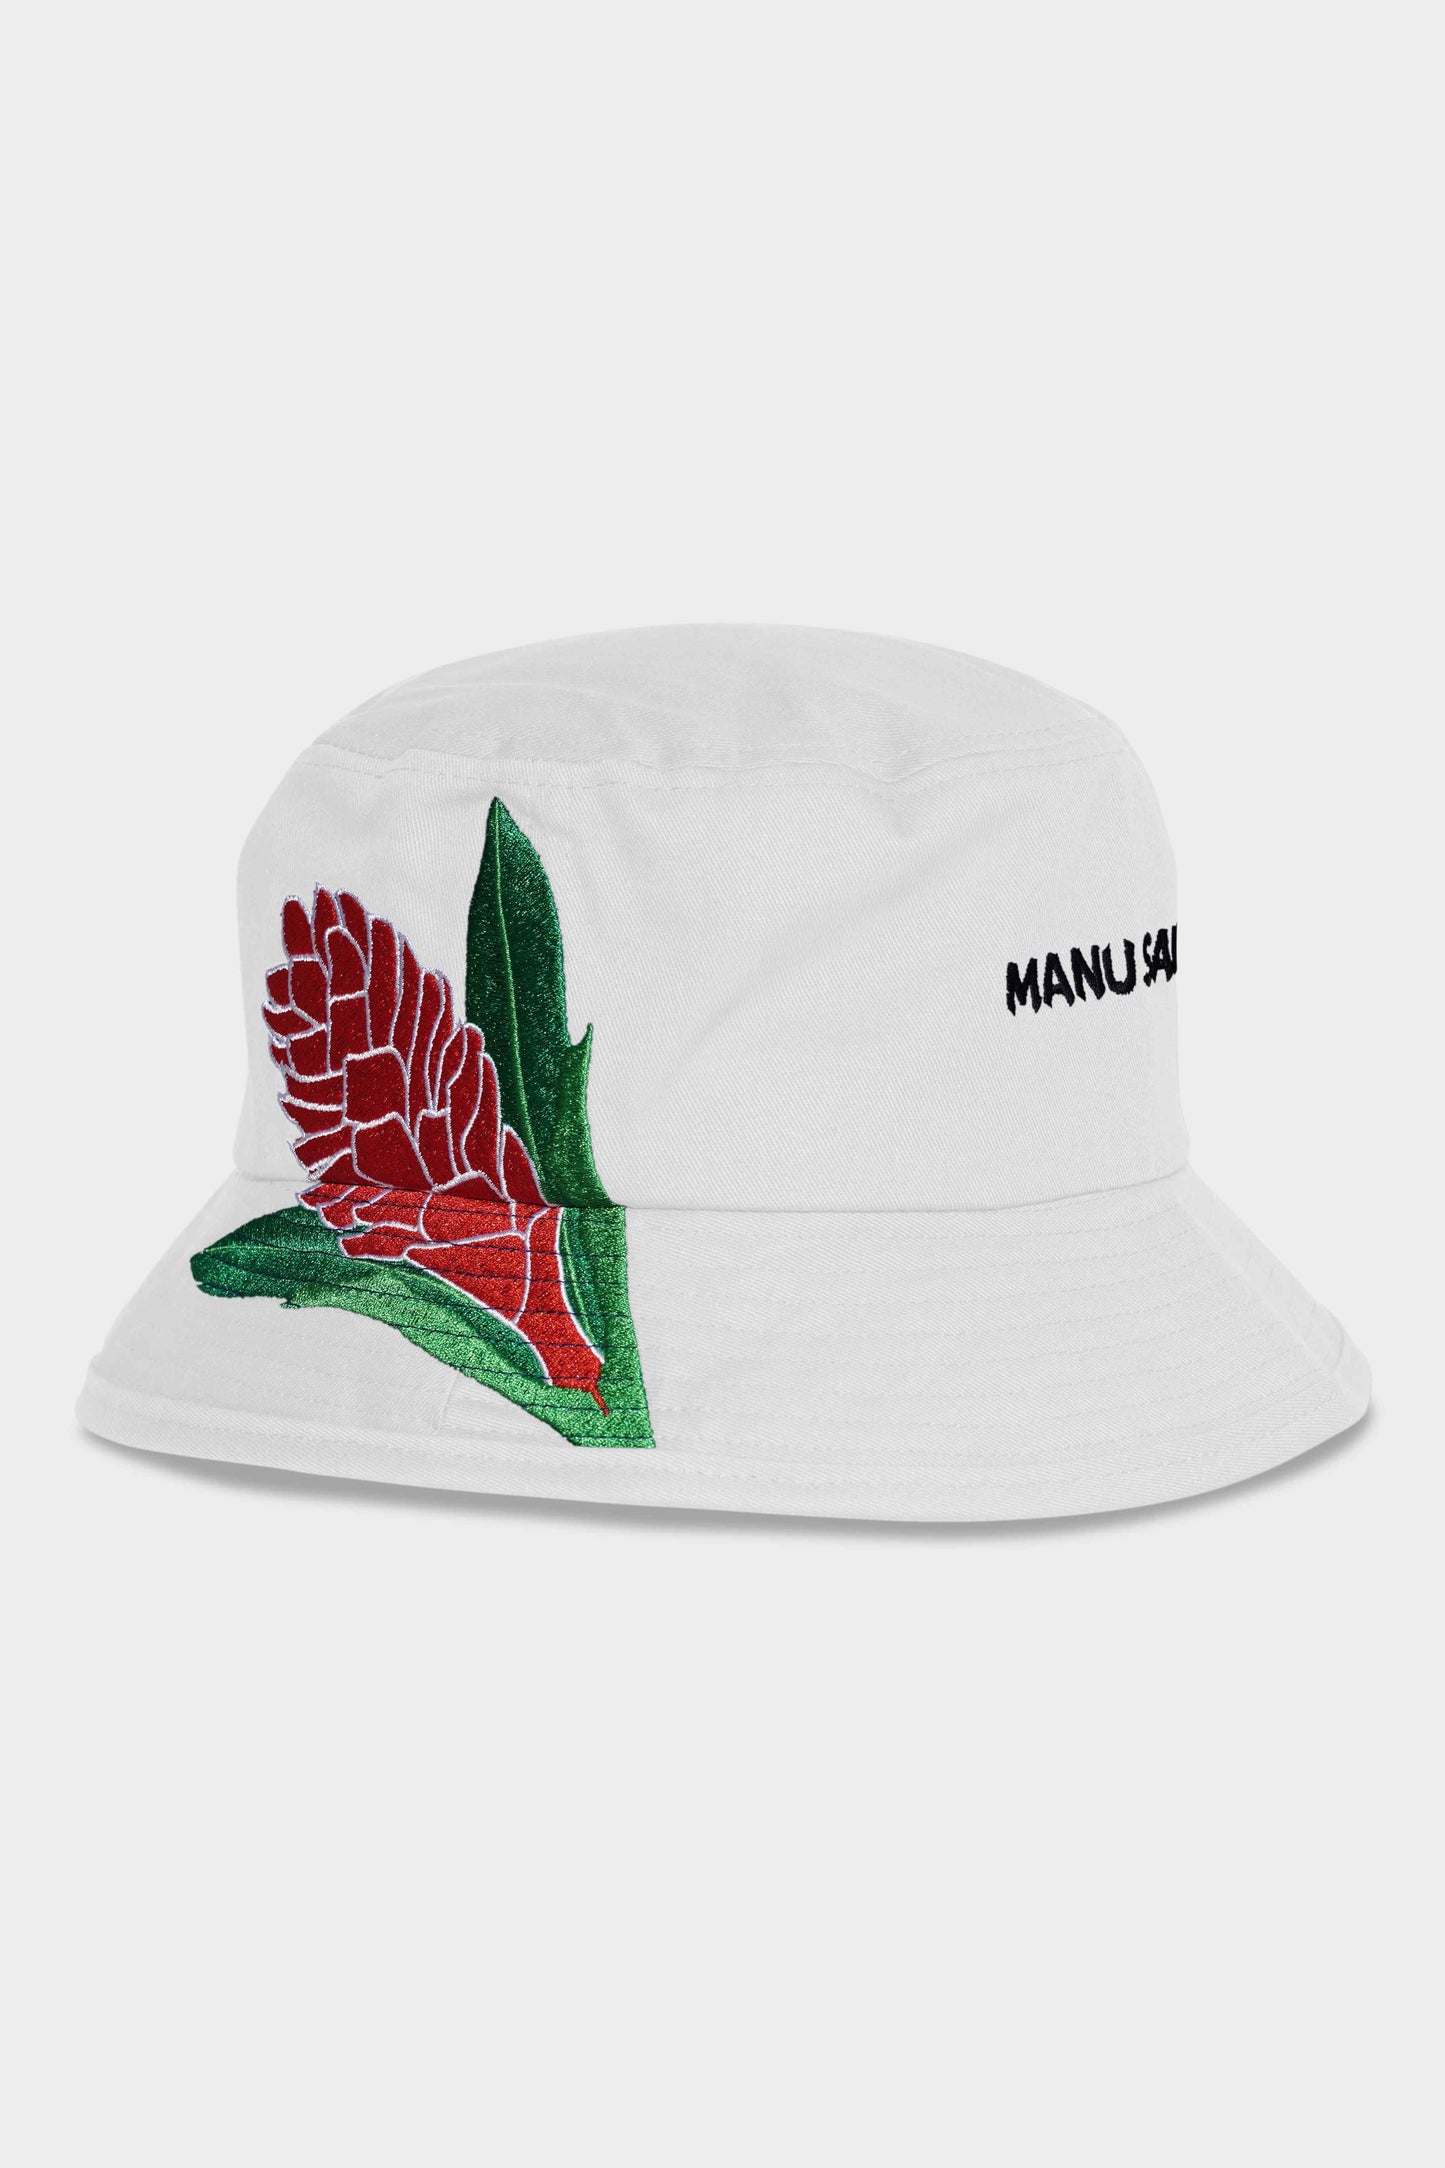 Manu Samoa Lifestyle Bucket Hat White